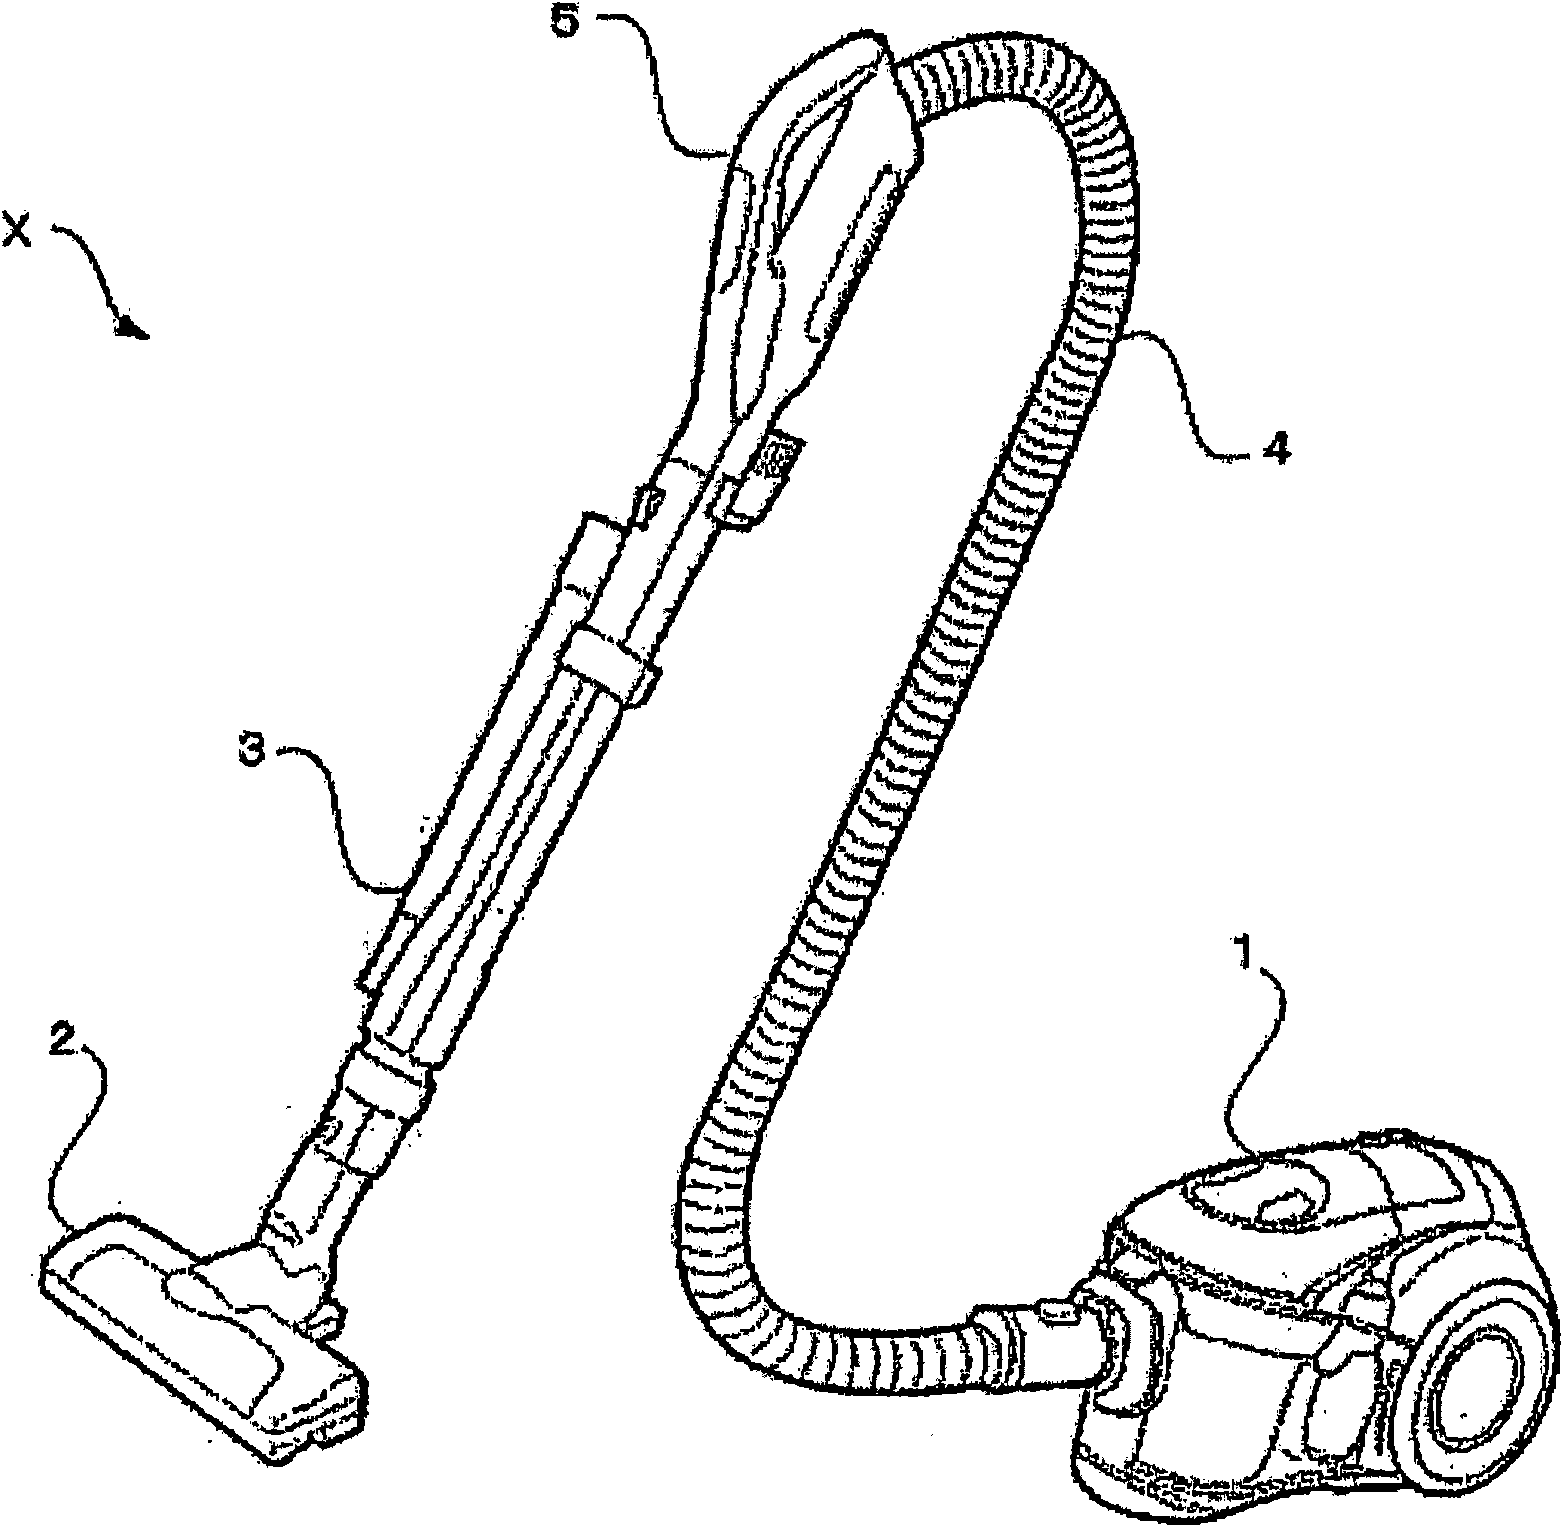 Cyclone separation apparatus